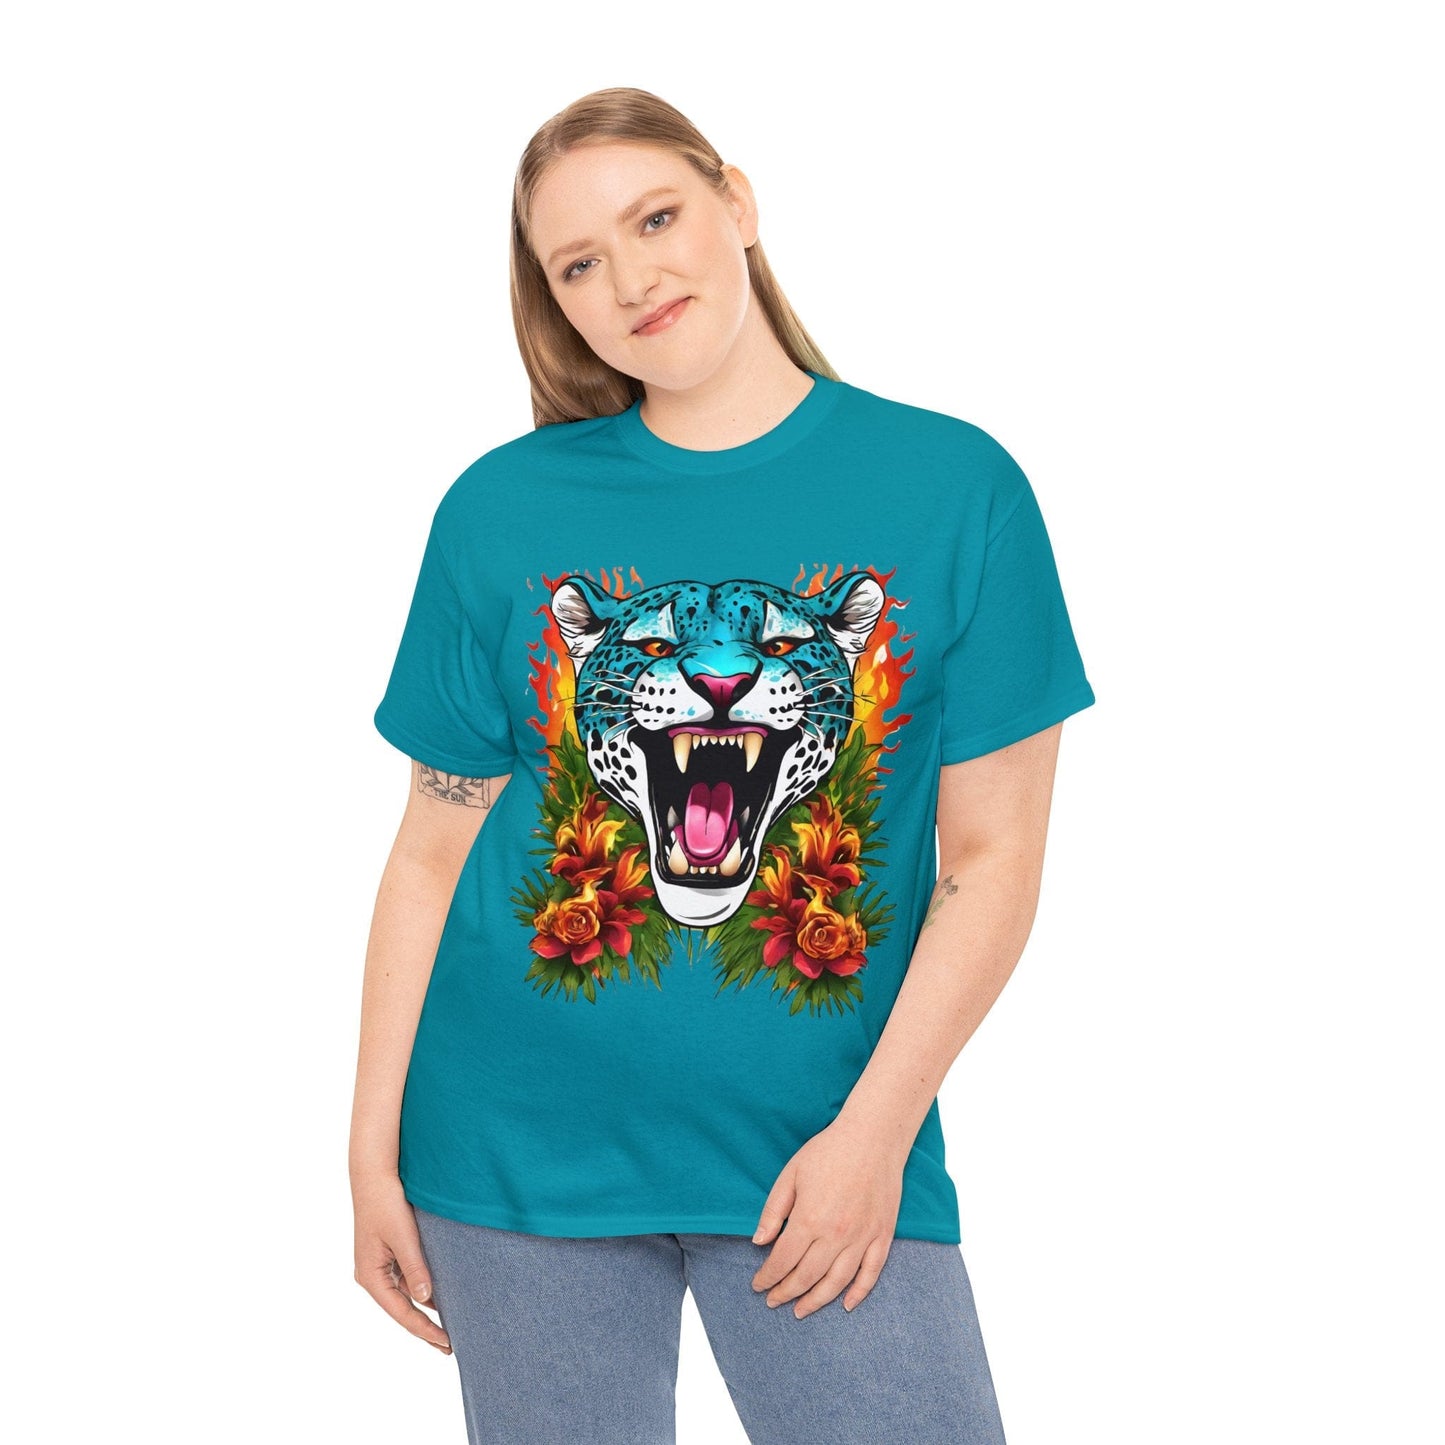 Jaguar Shirt Vintage Jaguar Big Cat Shirt Tiger Shirt Blue Jaguar T Shirt Blue Jaguar Flame and Roses Tee Big Cats Lover Tee Animal Shirt Floral Shirt Floral Jaguar Unisex Heavy Cotton Tee Flashlander